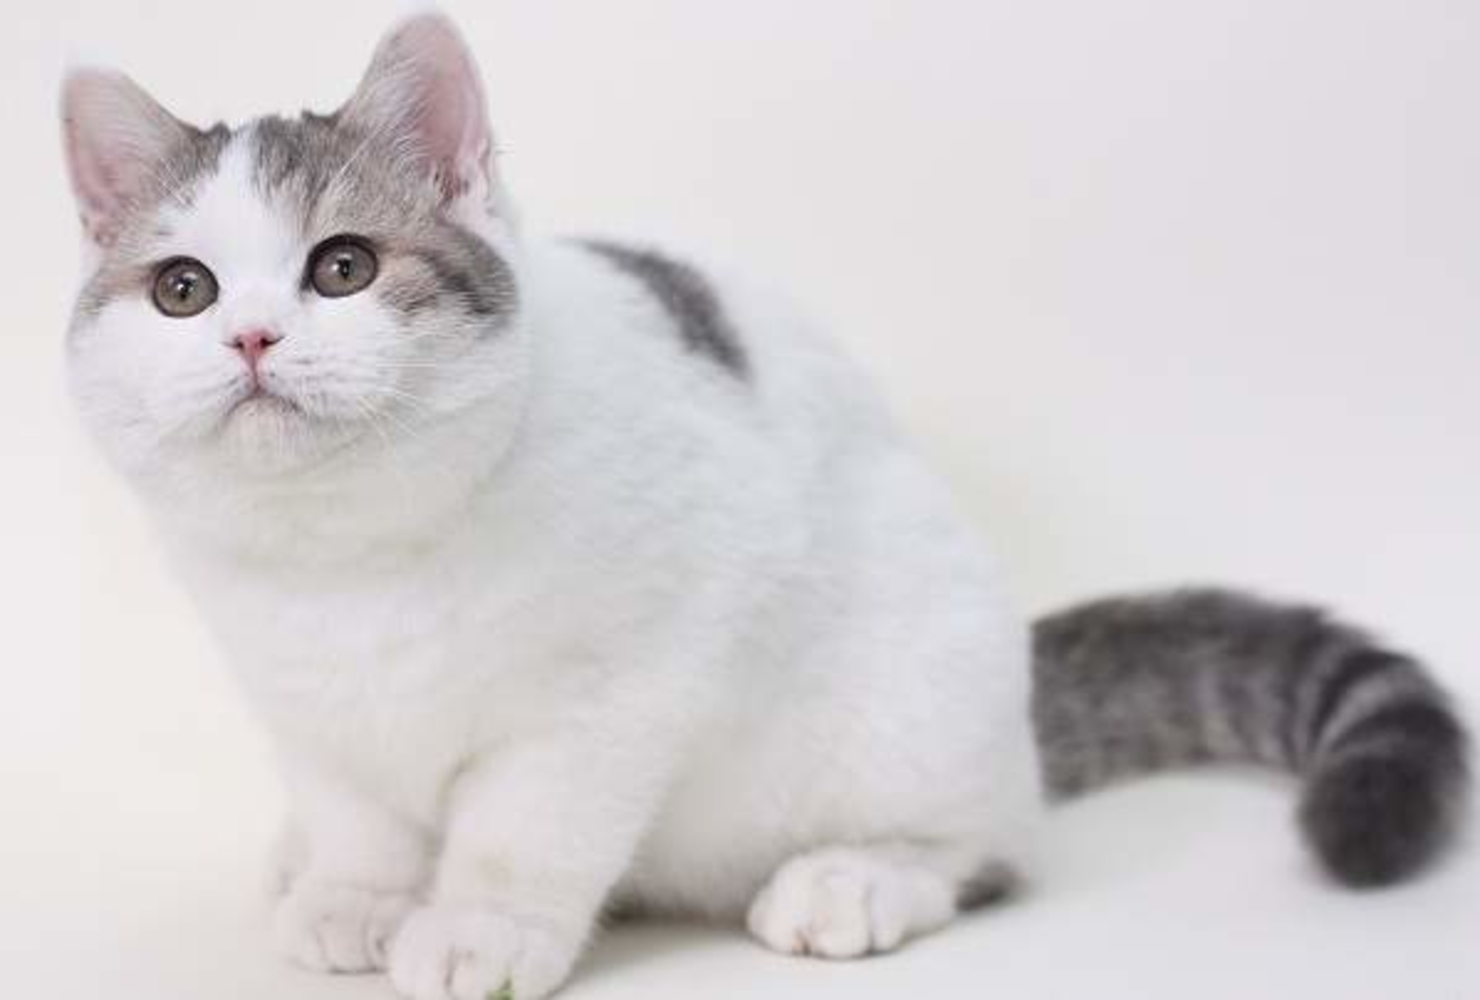 Рассмотрите фотографию кошки серо белого окраса выберите